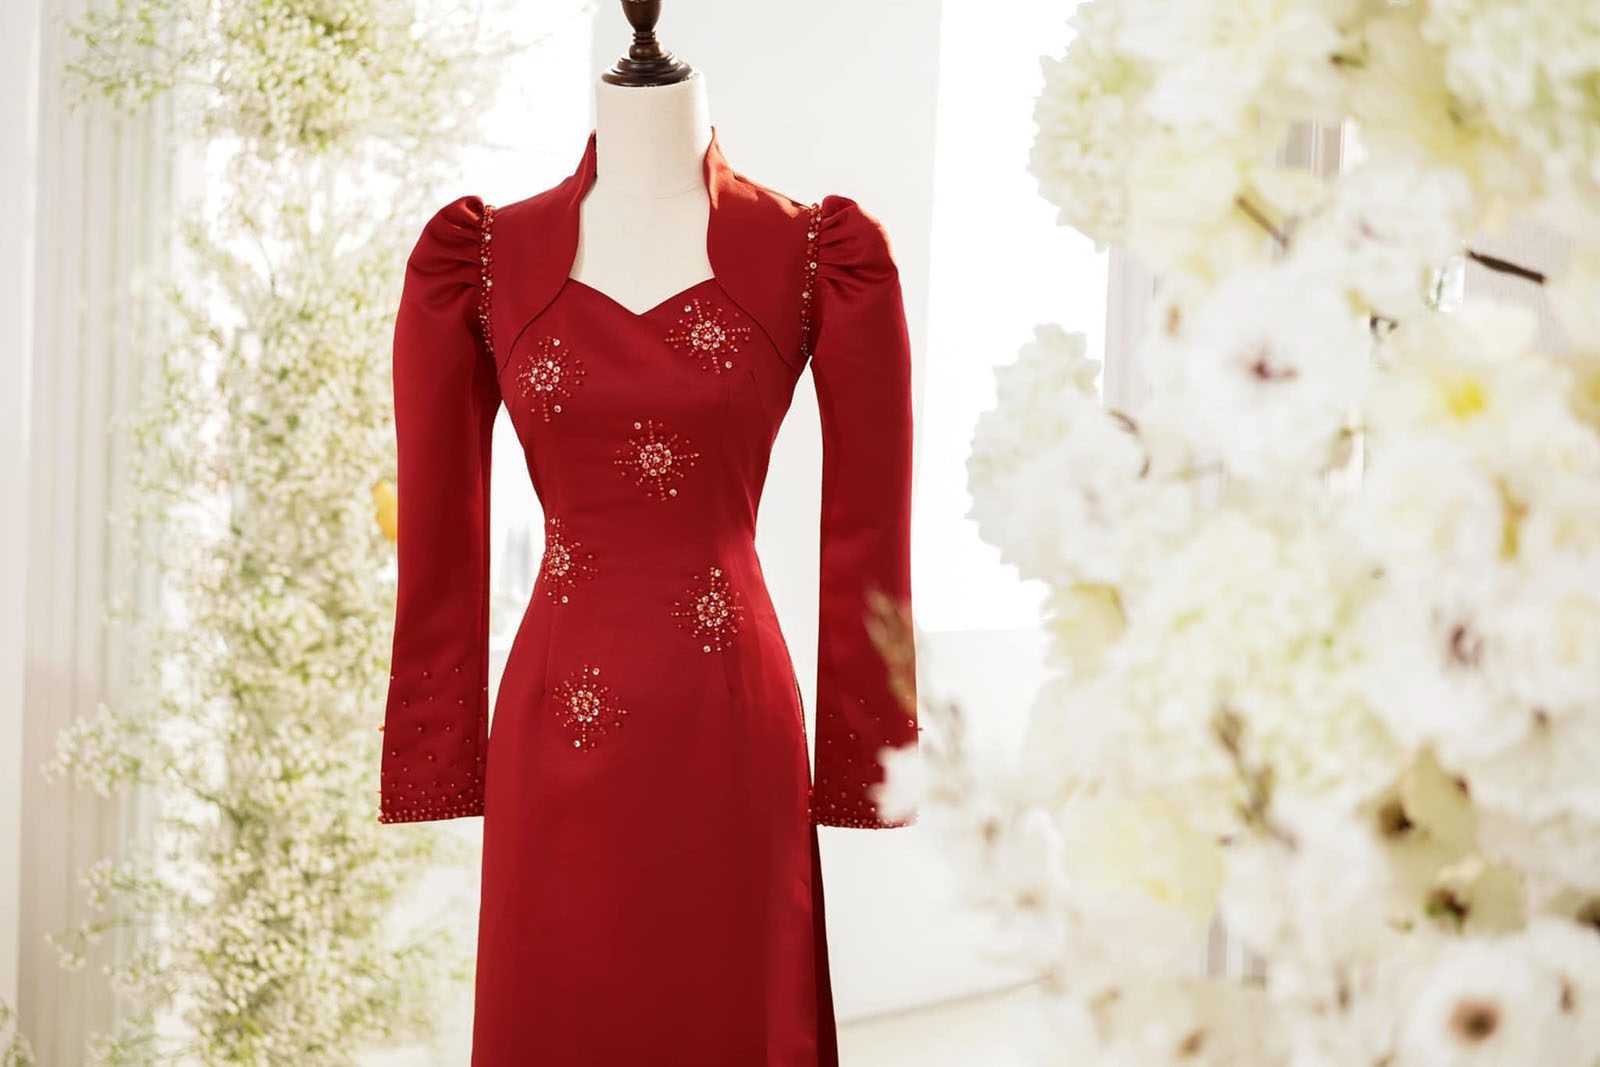 Gợi ý những mẫu áo dài cưới màu đỏ được ưa chuộng hiện nay